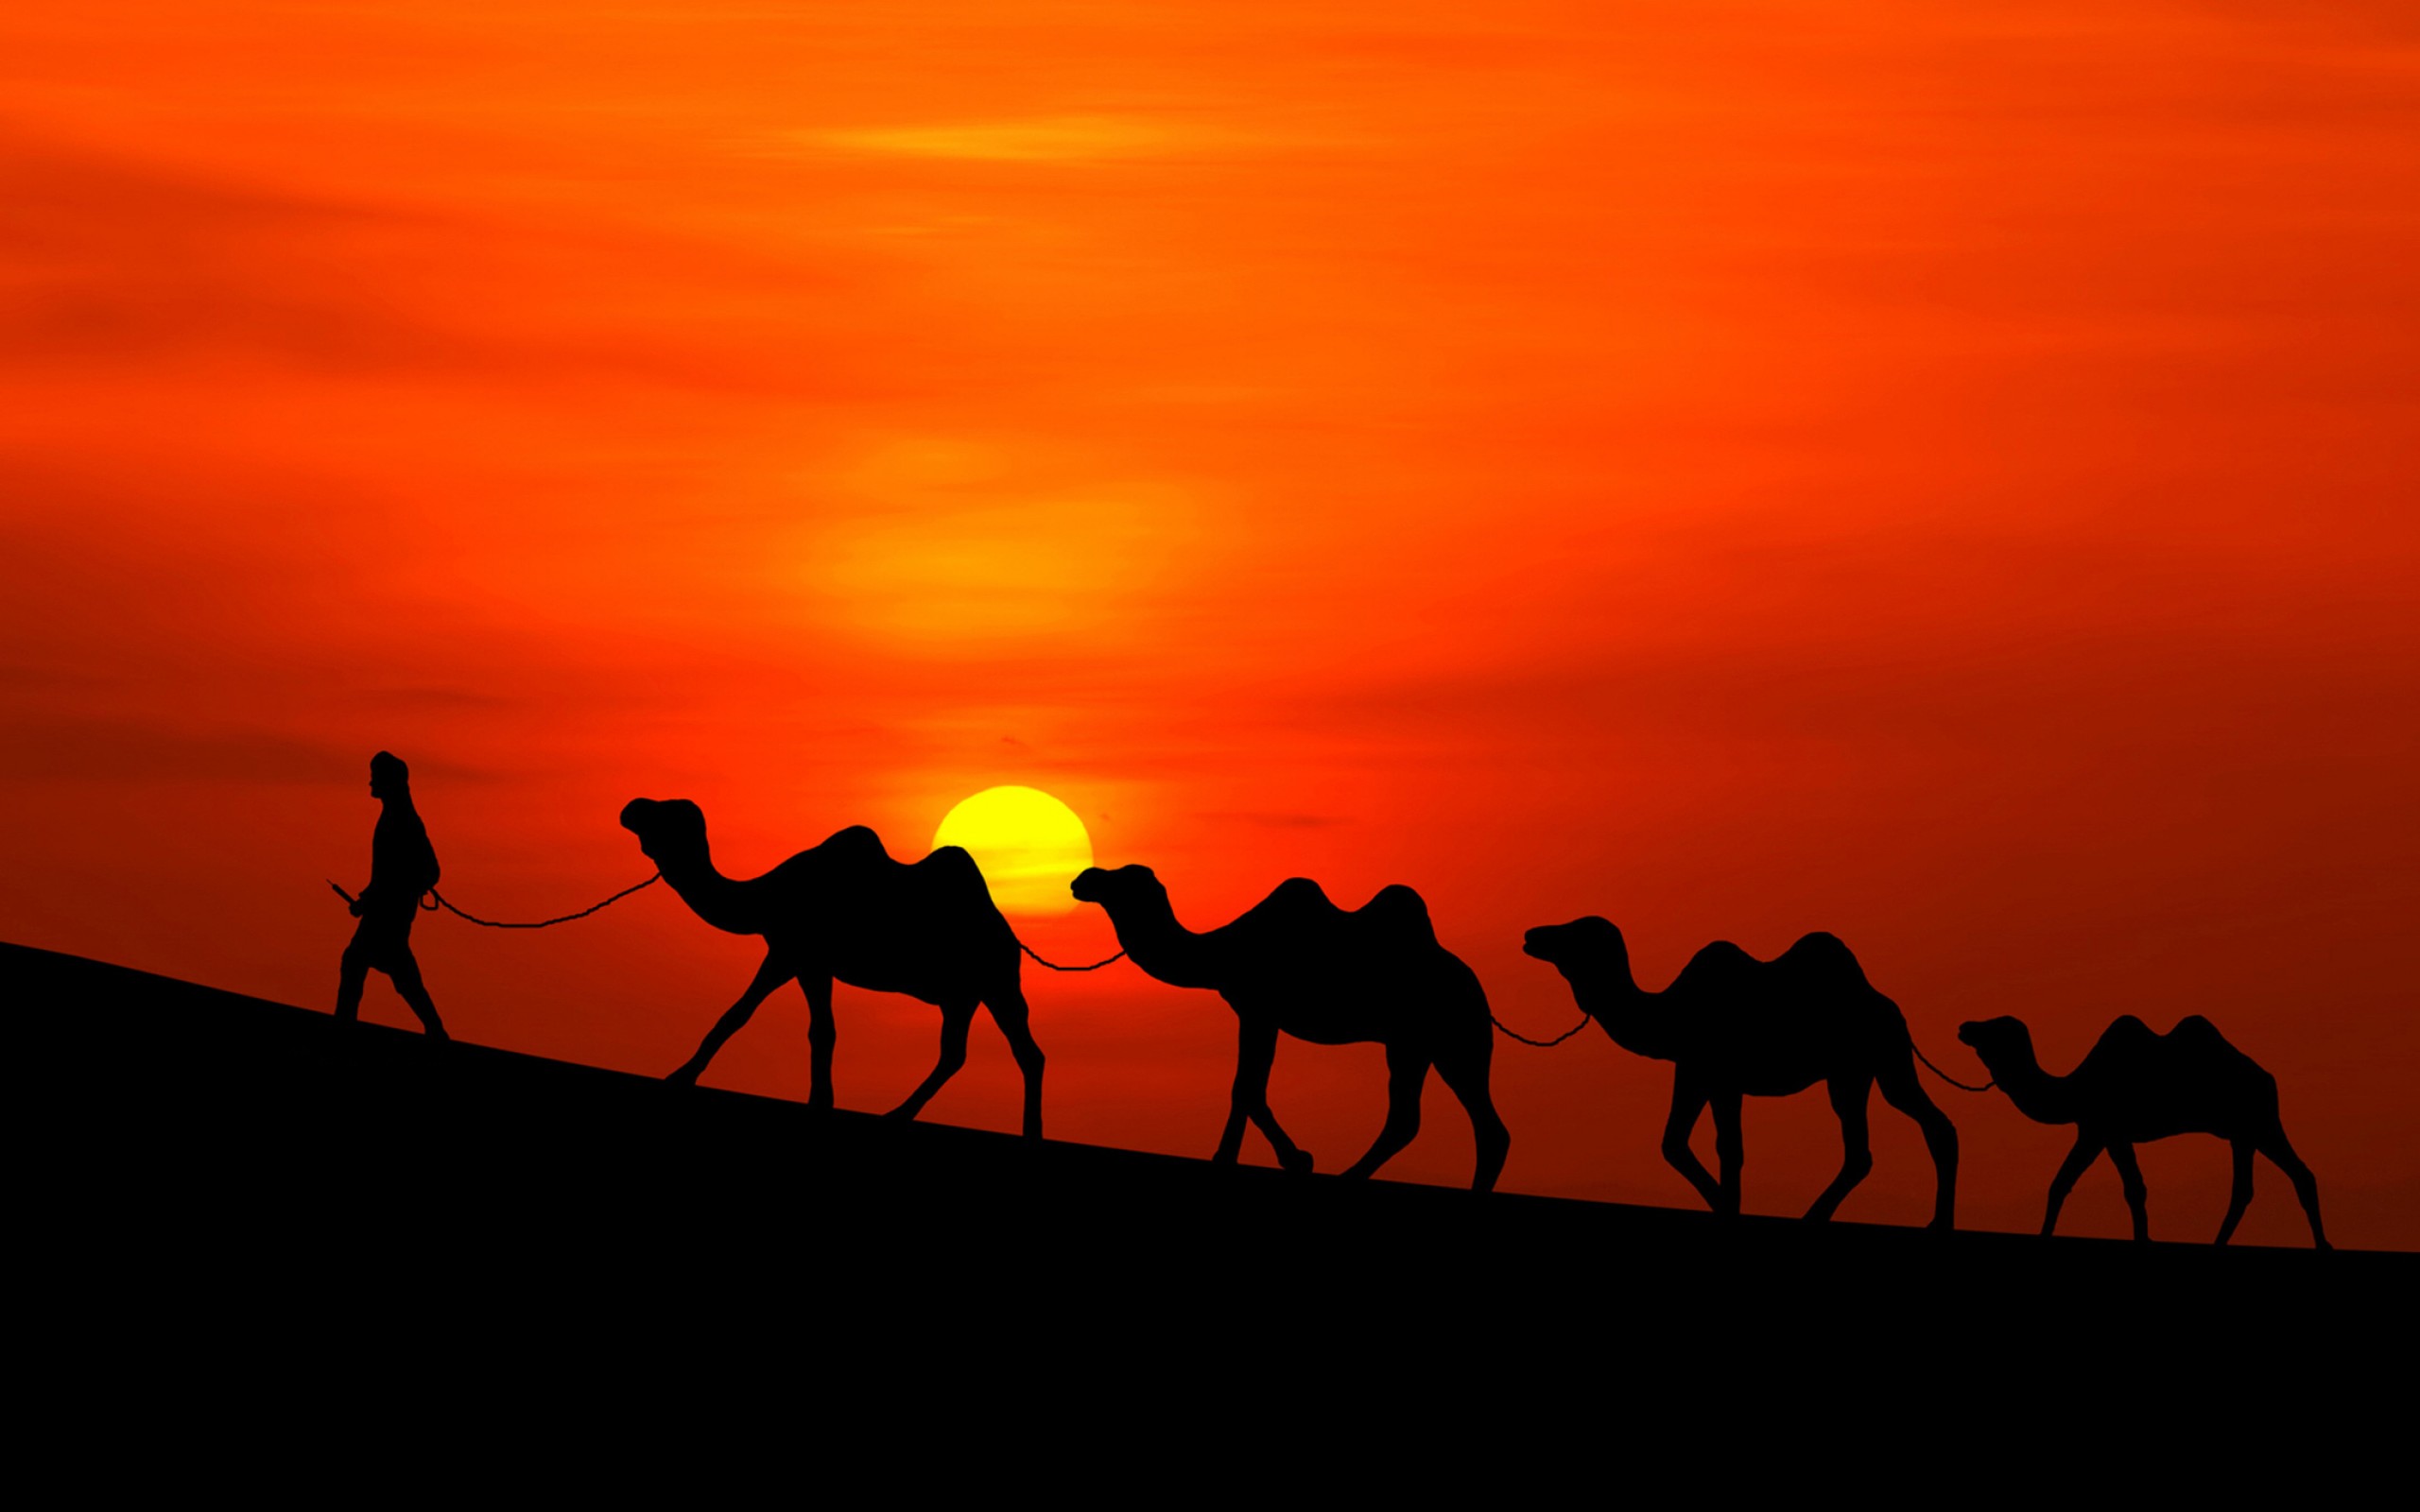 Хатуб караван. Великий шелковый путь Караван. Шелковый путь Караван верблюдов. Верблюд Караван пустыни. Верблюд в пустыне.